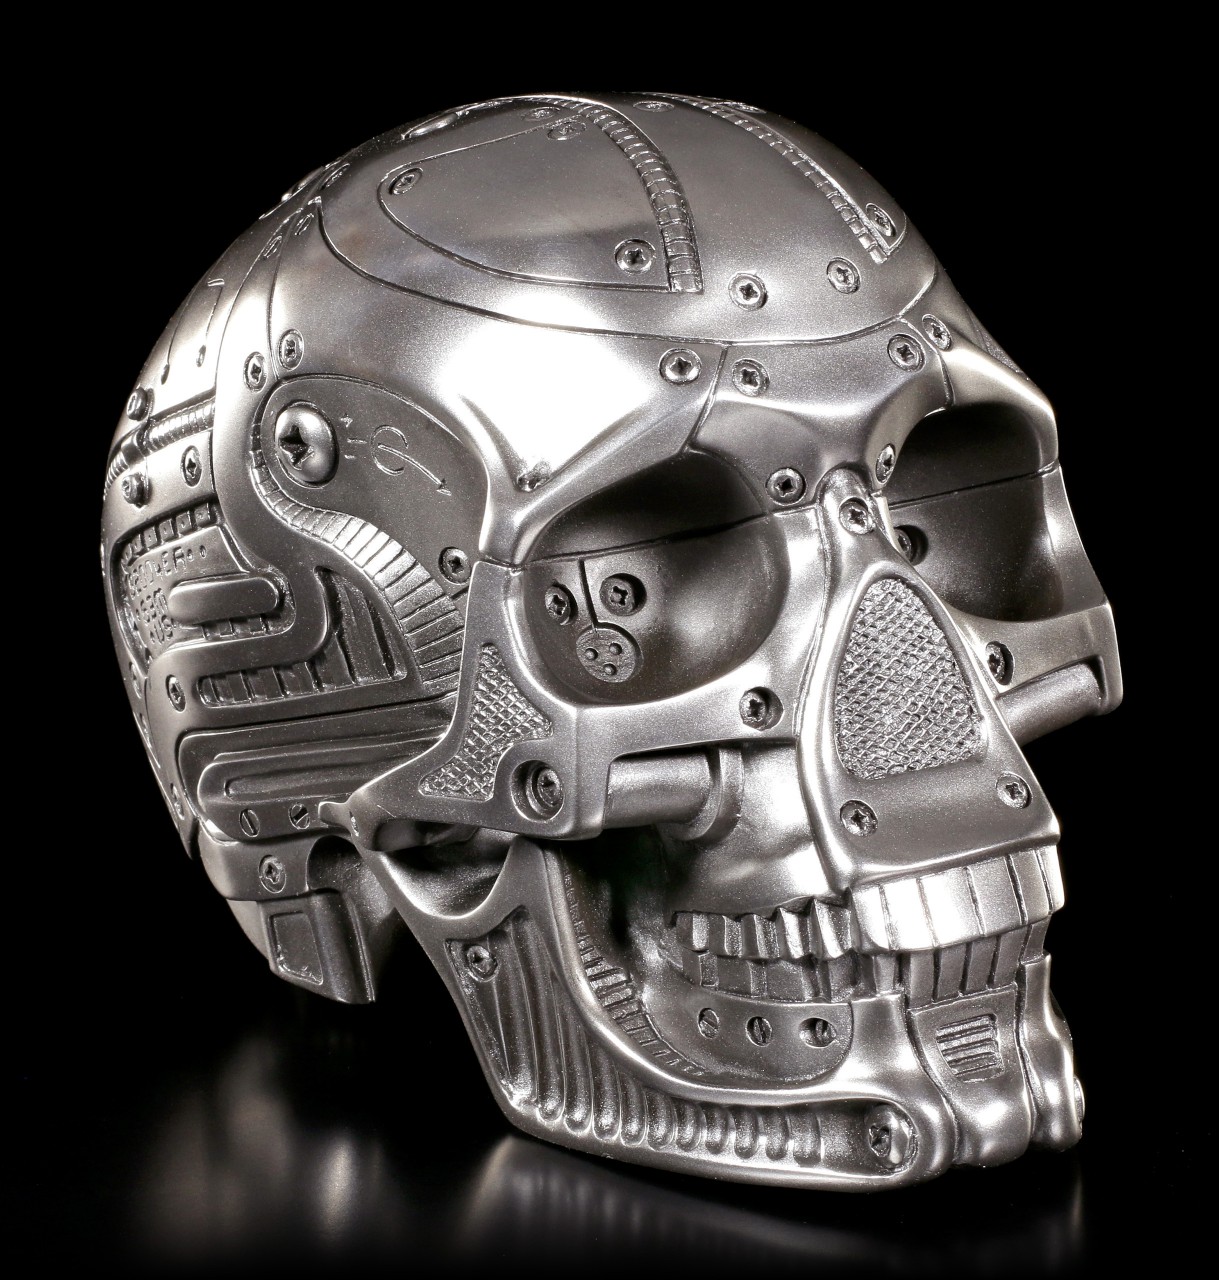 Techno Head - Cyborg Skull